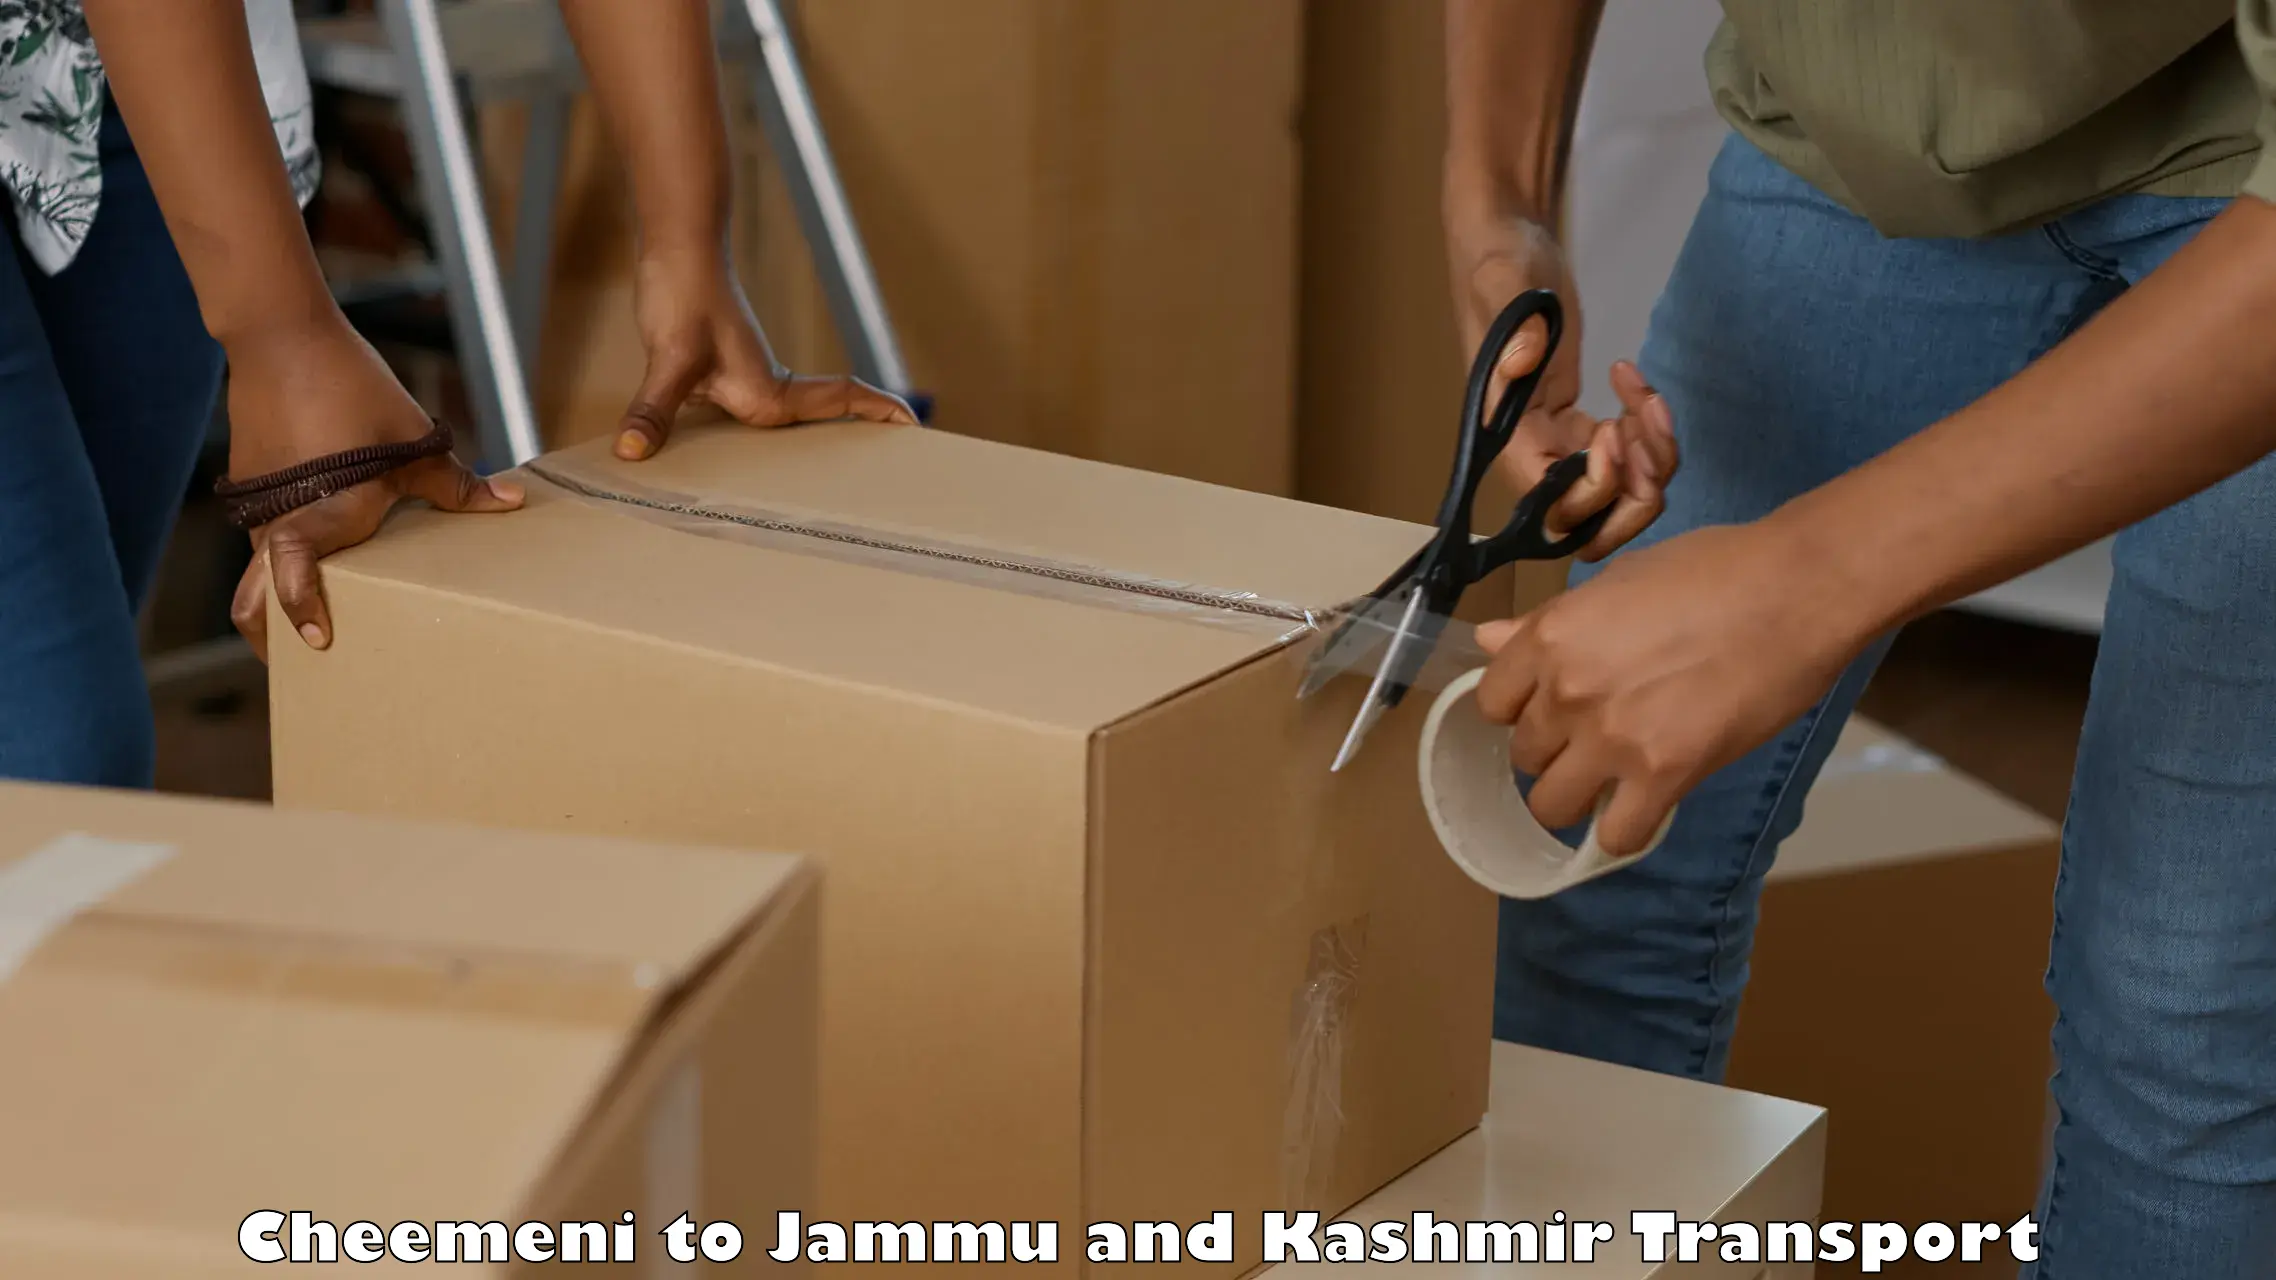 Truck transport companies in India Cheemeni to Bhaderwah